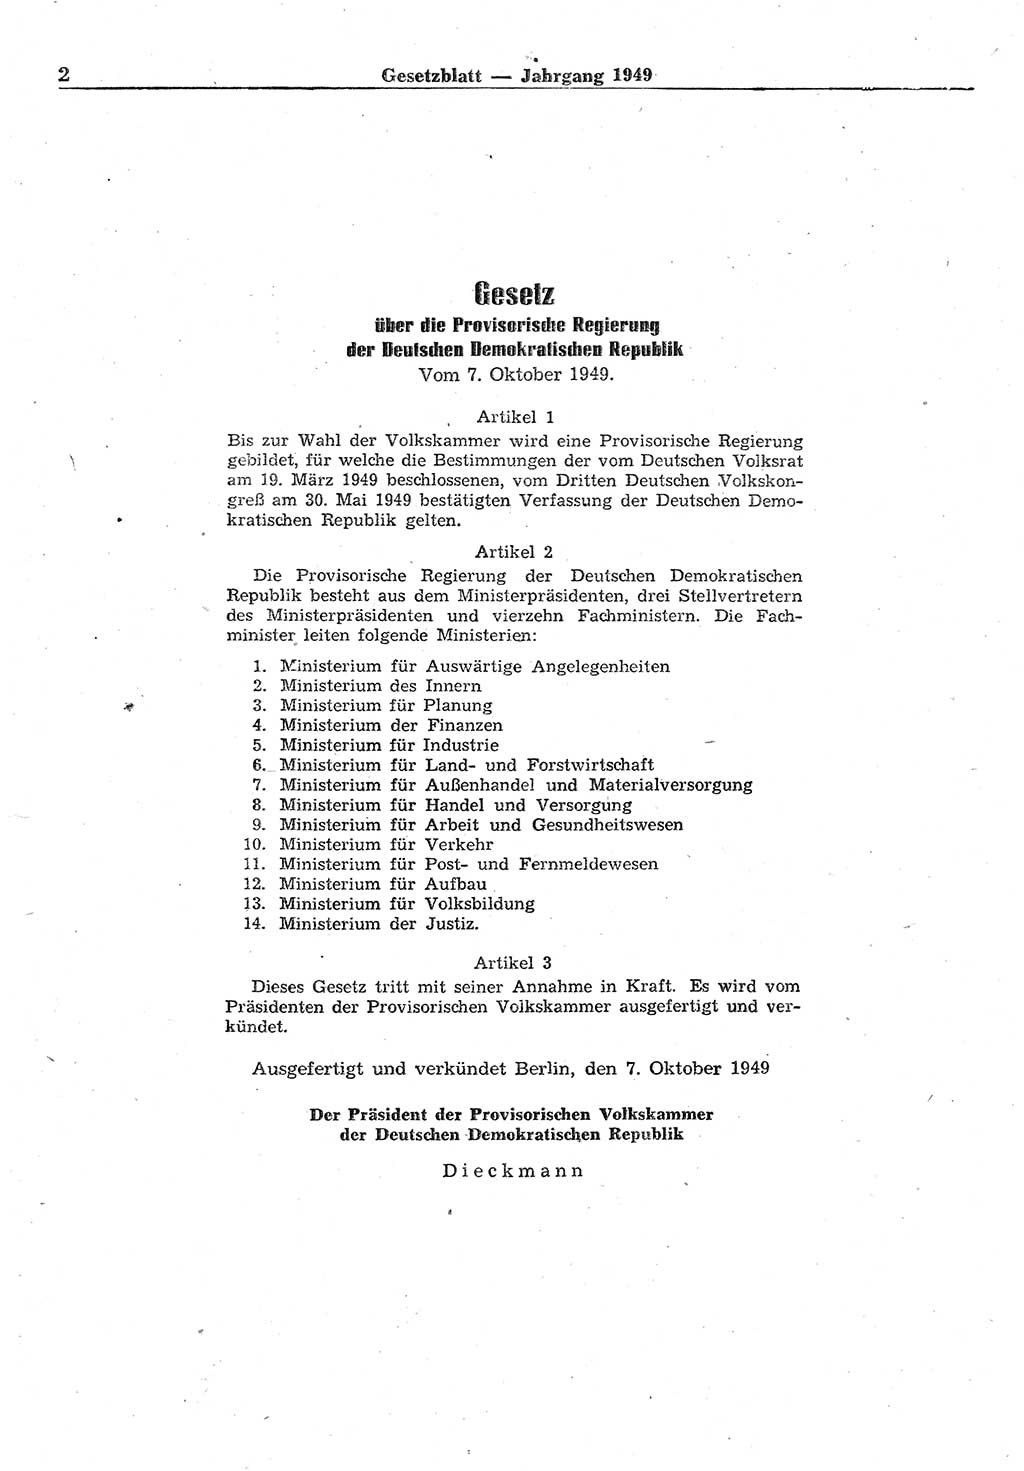 Gesetzblatt (GBl.) der Deutschen Demokratischen Republik (DDR) 1949, Seite 2 (GBl. DDR 1949, S. 2)